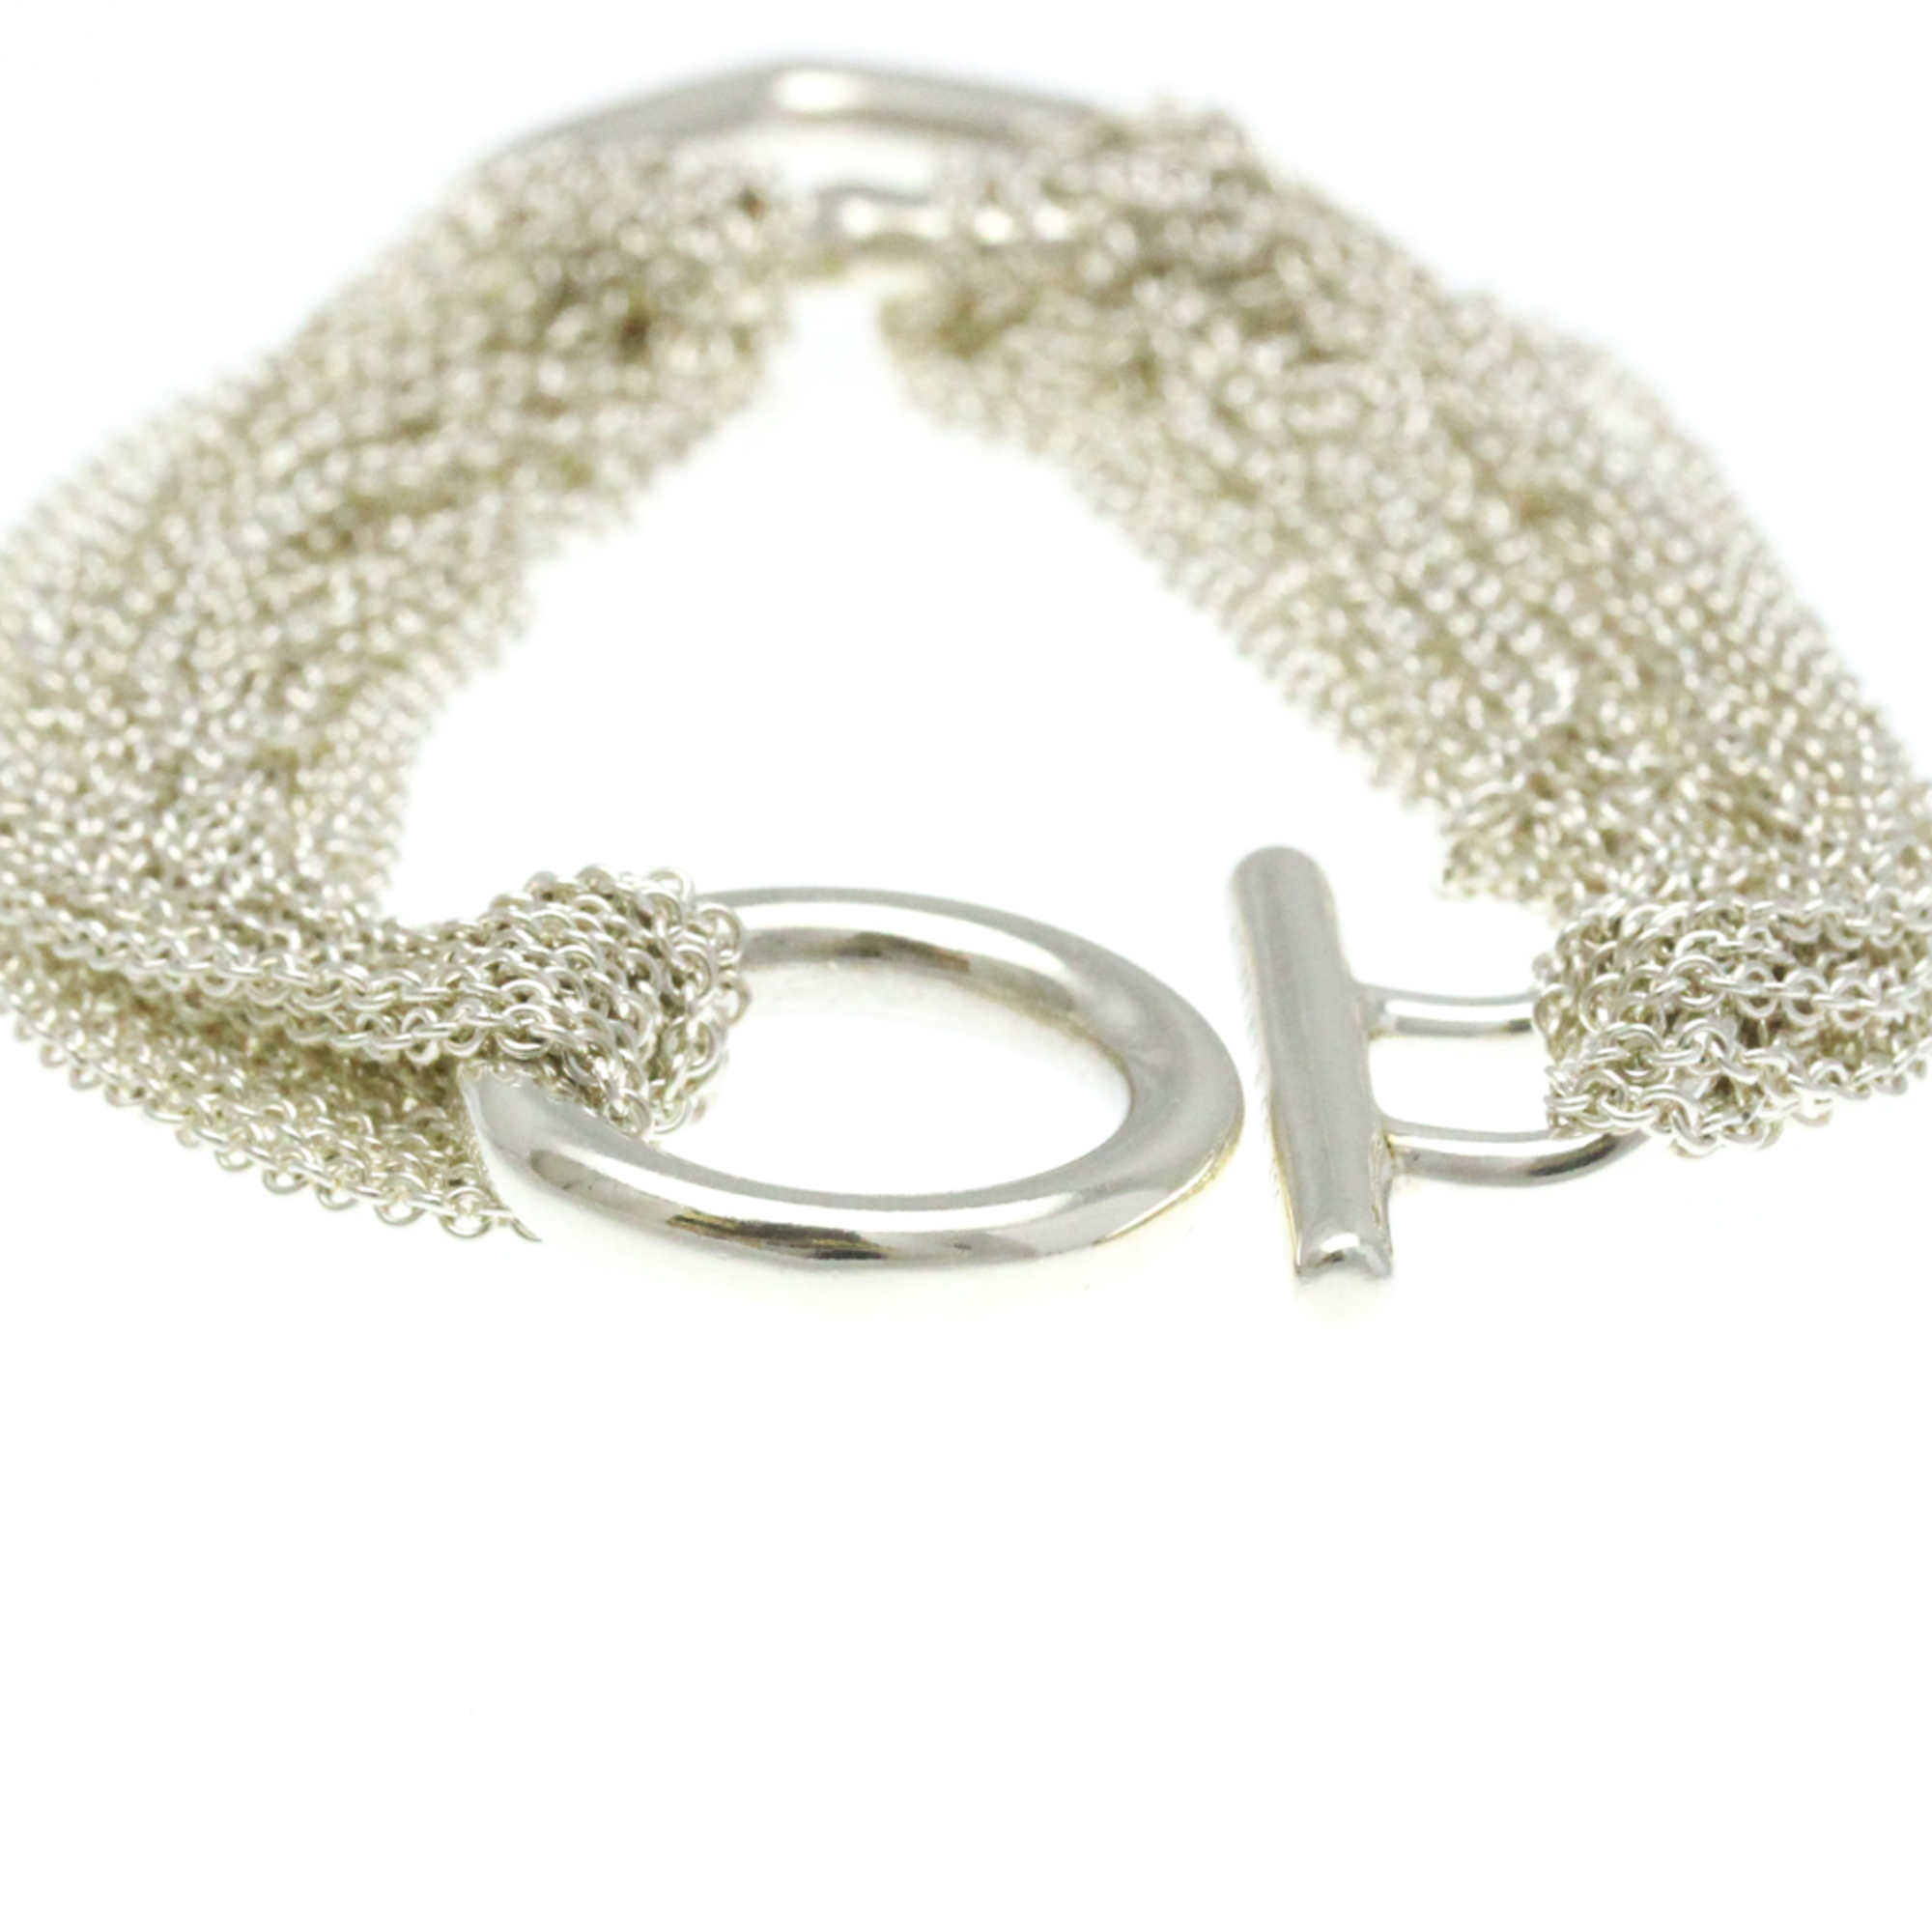 Tiffany Heart Toggle Bracelet Silver 925 No Stone Charm Bracelet Silver